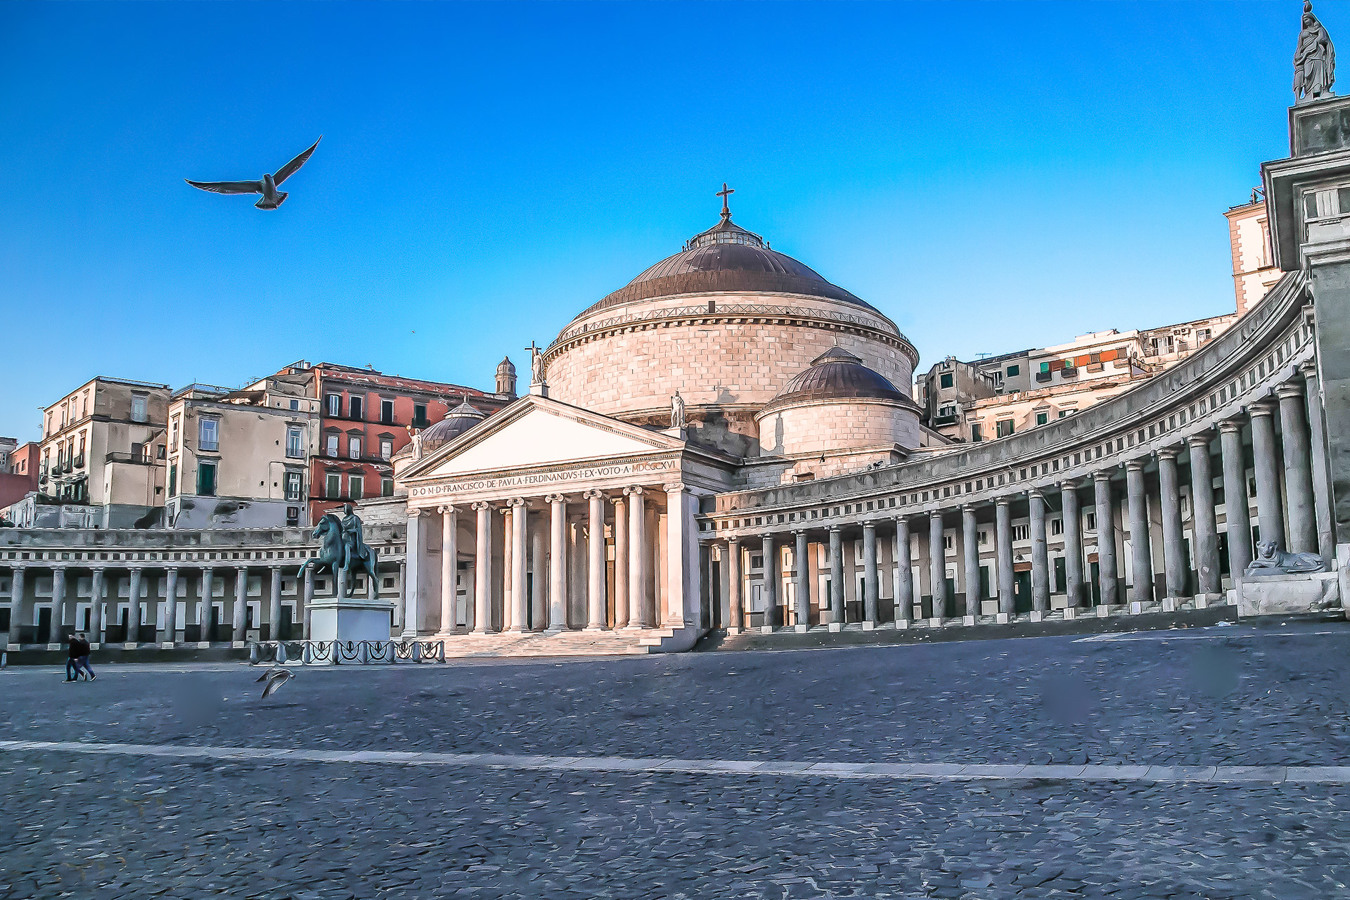 Piazza del Plebiscito in Naples.